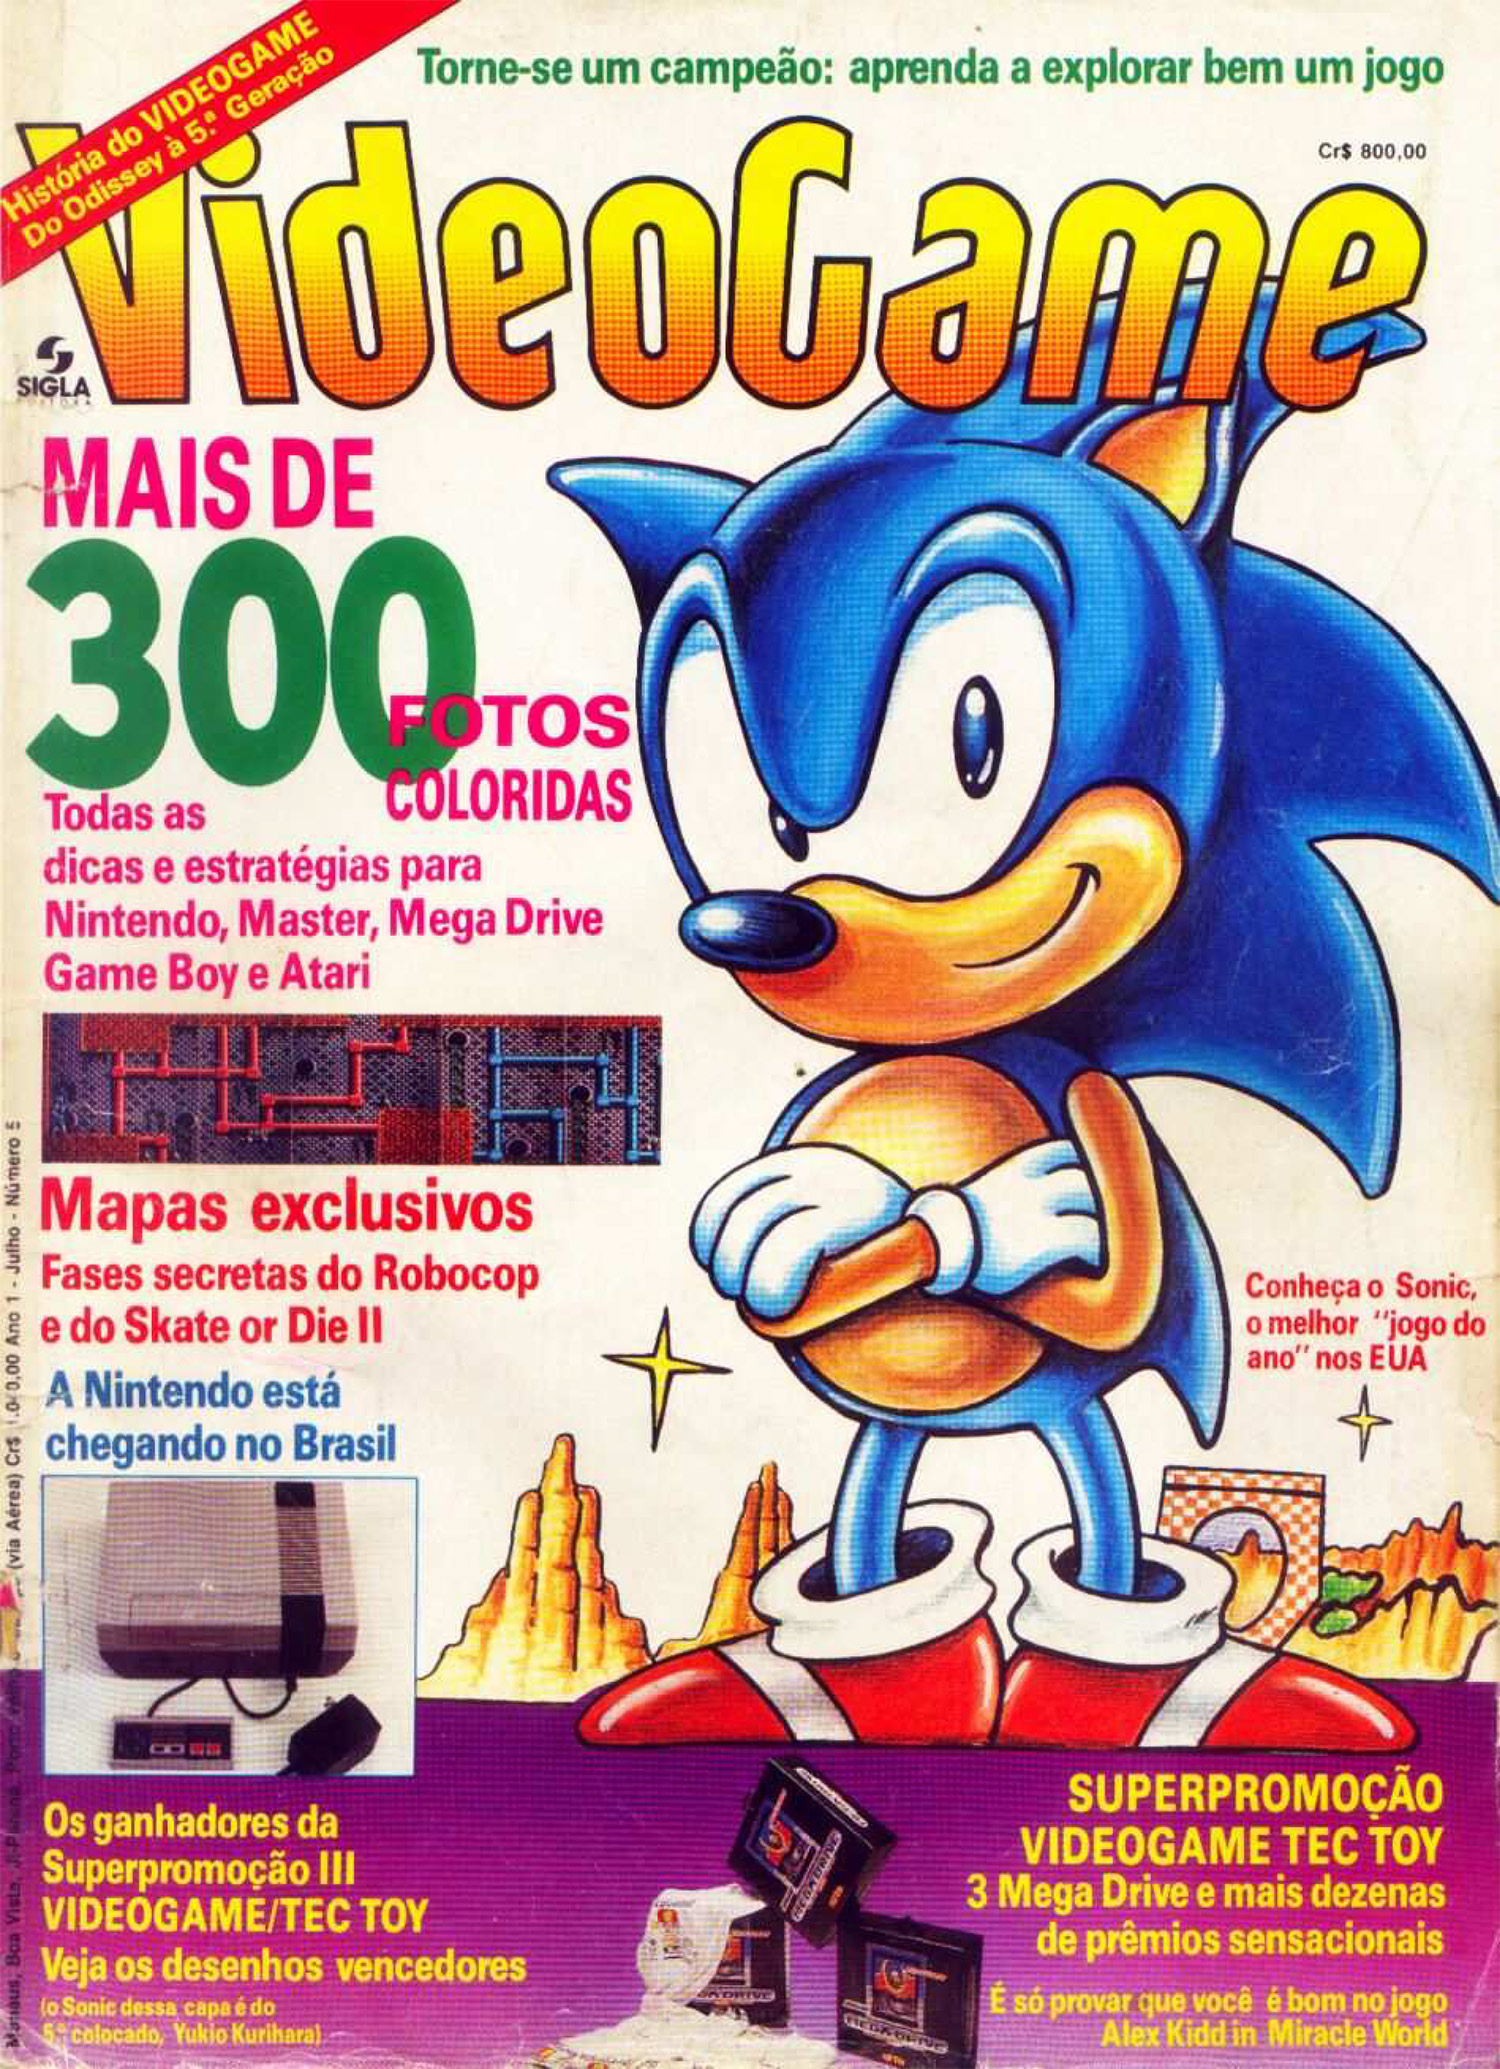 Sonic the hedgehog - volume 5: cidade em crise ( acompanha poster E marcado  em Promoção na Americanas